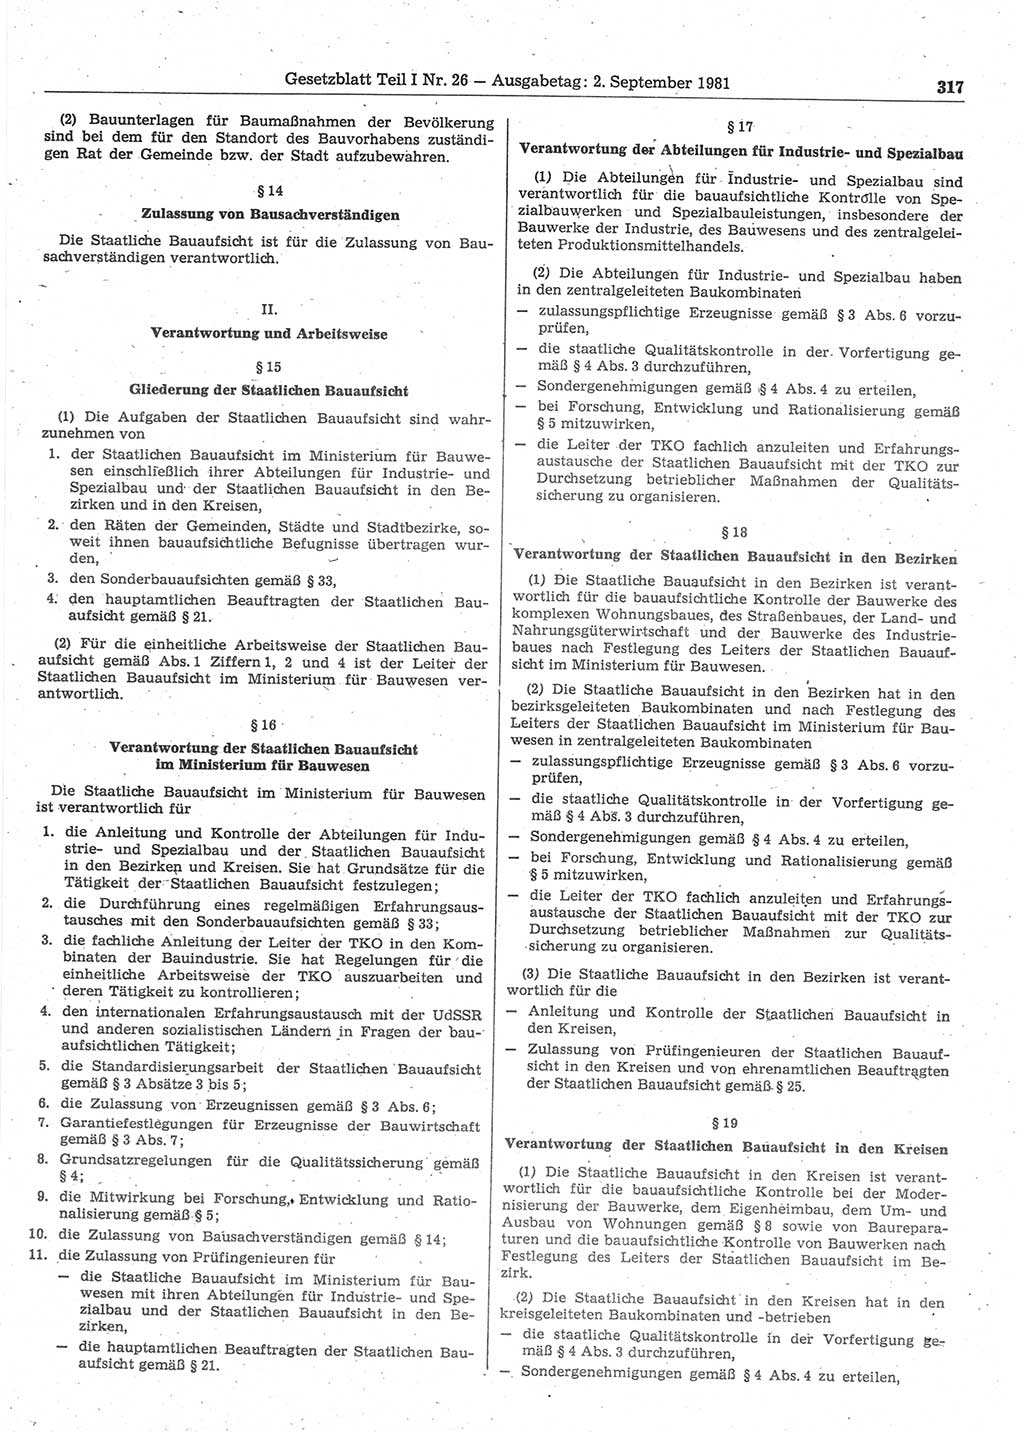 Gesetzblatt (GBl.) der Deutschen Demokratischen Republik (DDR) Teil Ⅰ 1981, Seite 317 (GBl. DDR Ⅰ 1981, S. 317)